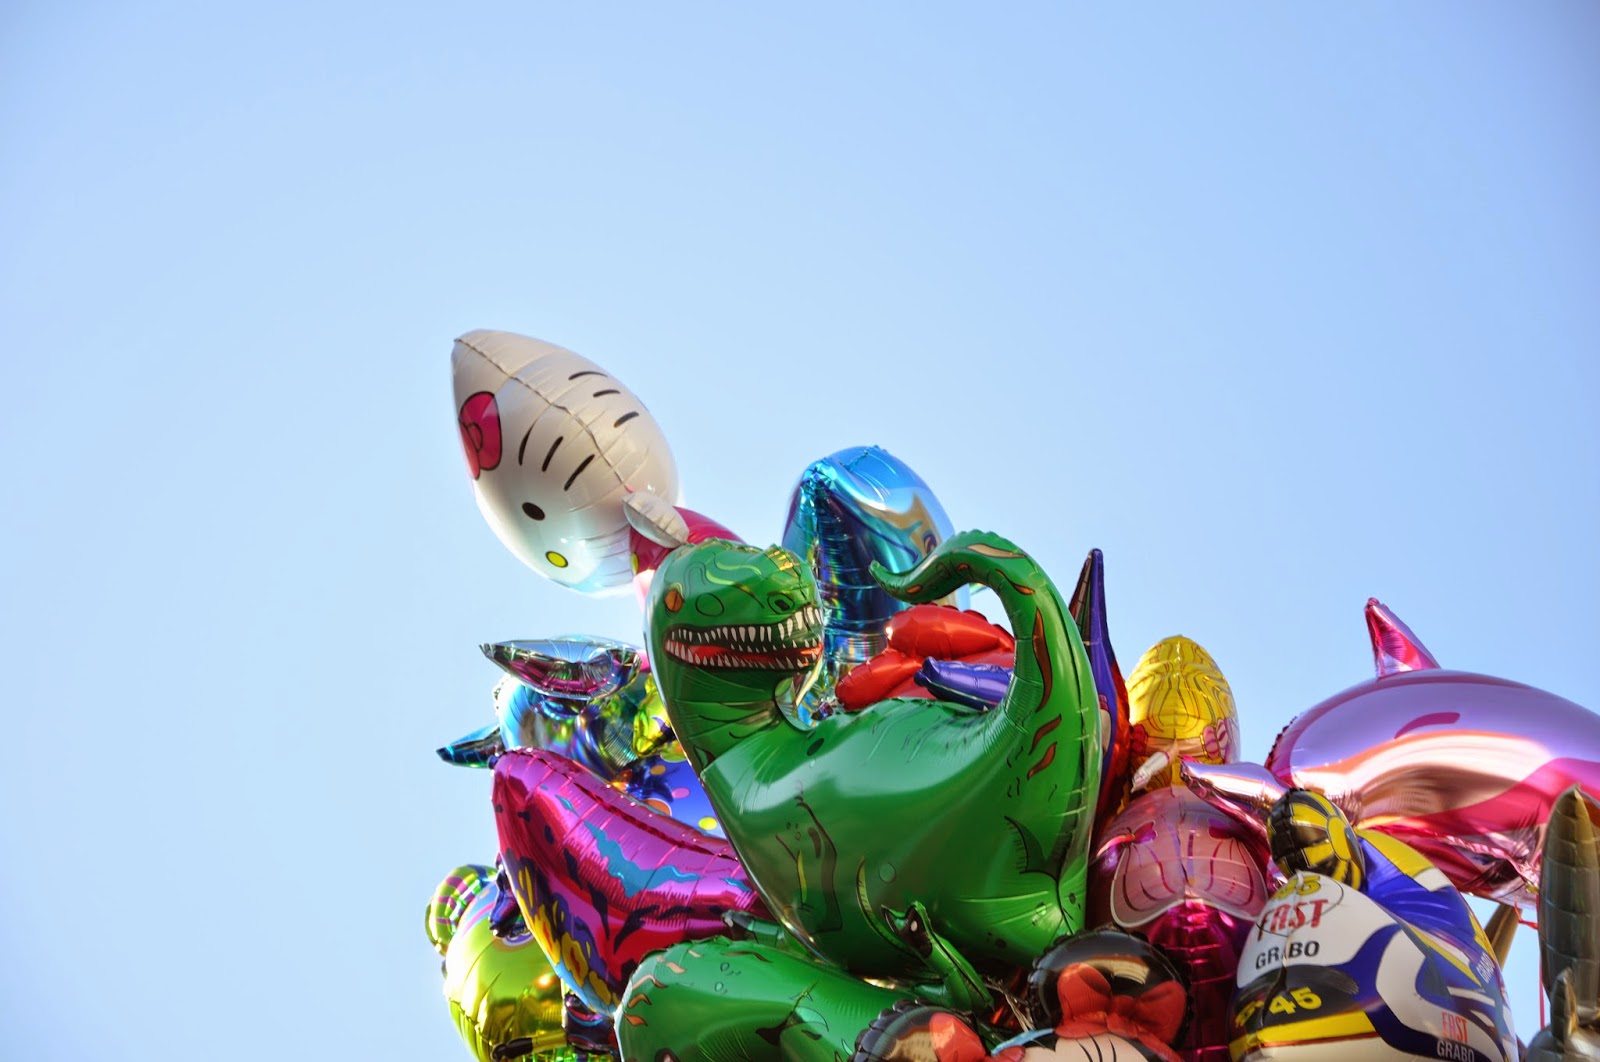 Jahrmarkt Memmingen: Luftballone mit Motiven